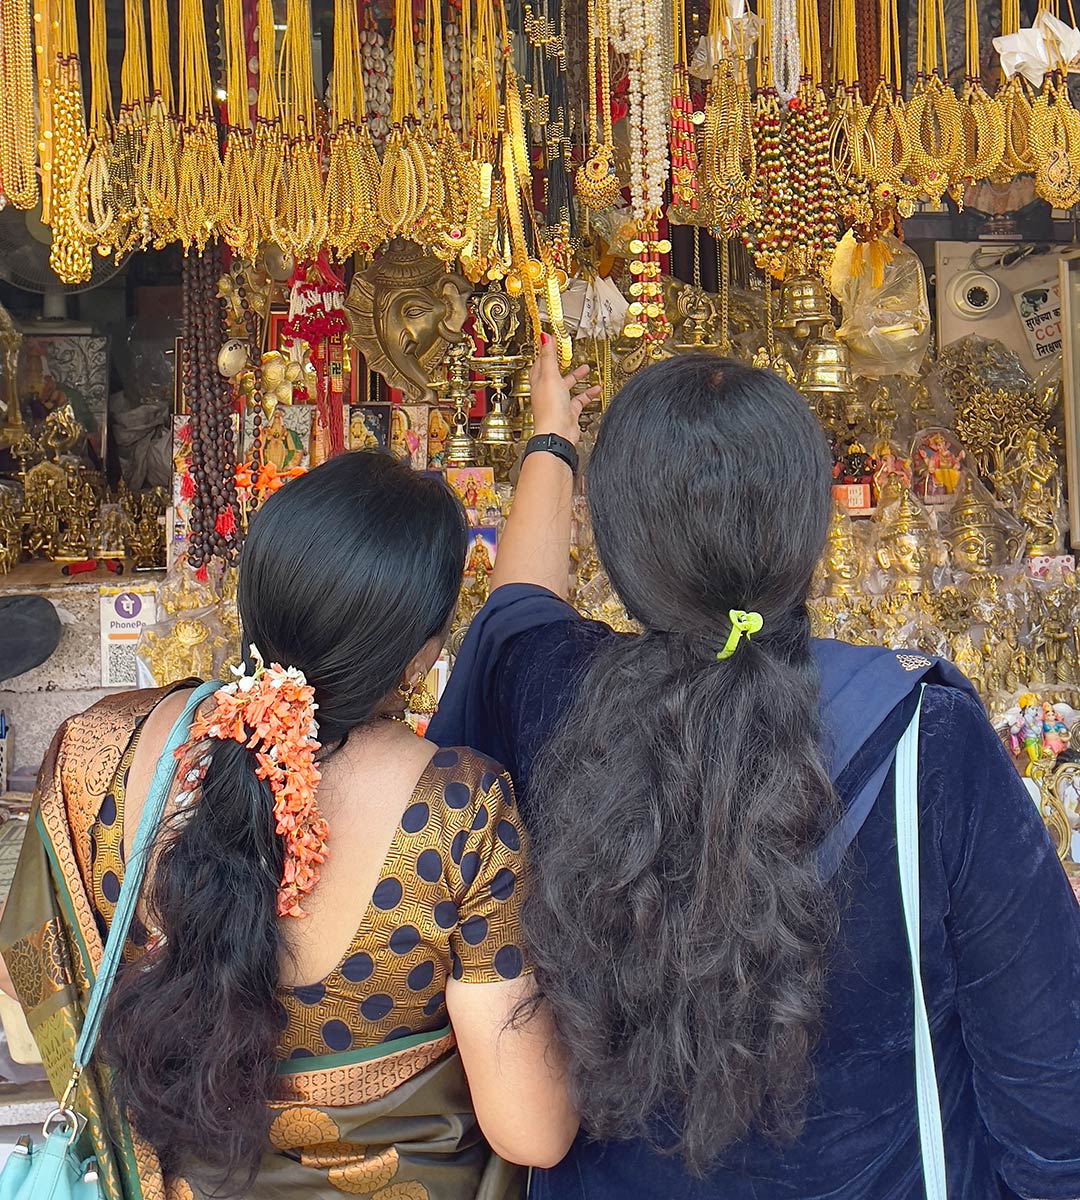 معبد ماهالاكشمي ، كولهابور. نساء في محل الحاج يبيعن أدوات دينية.